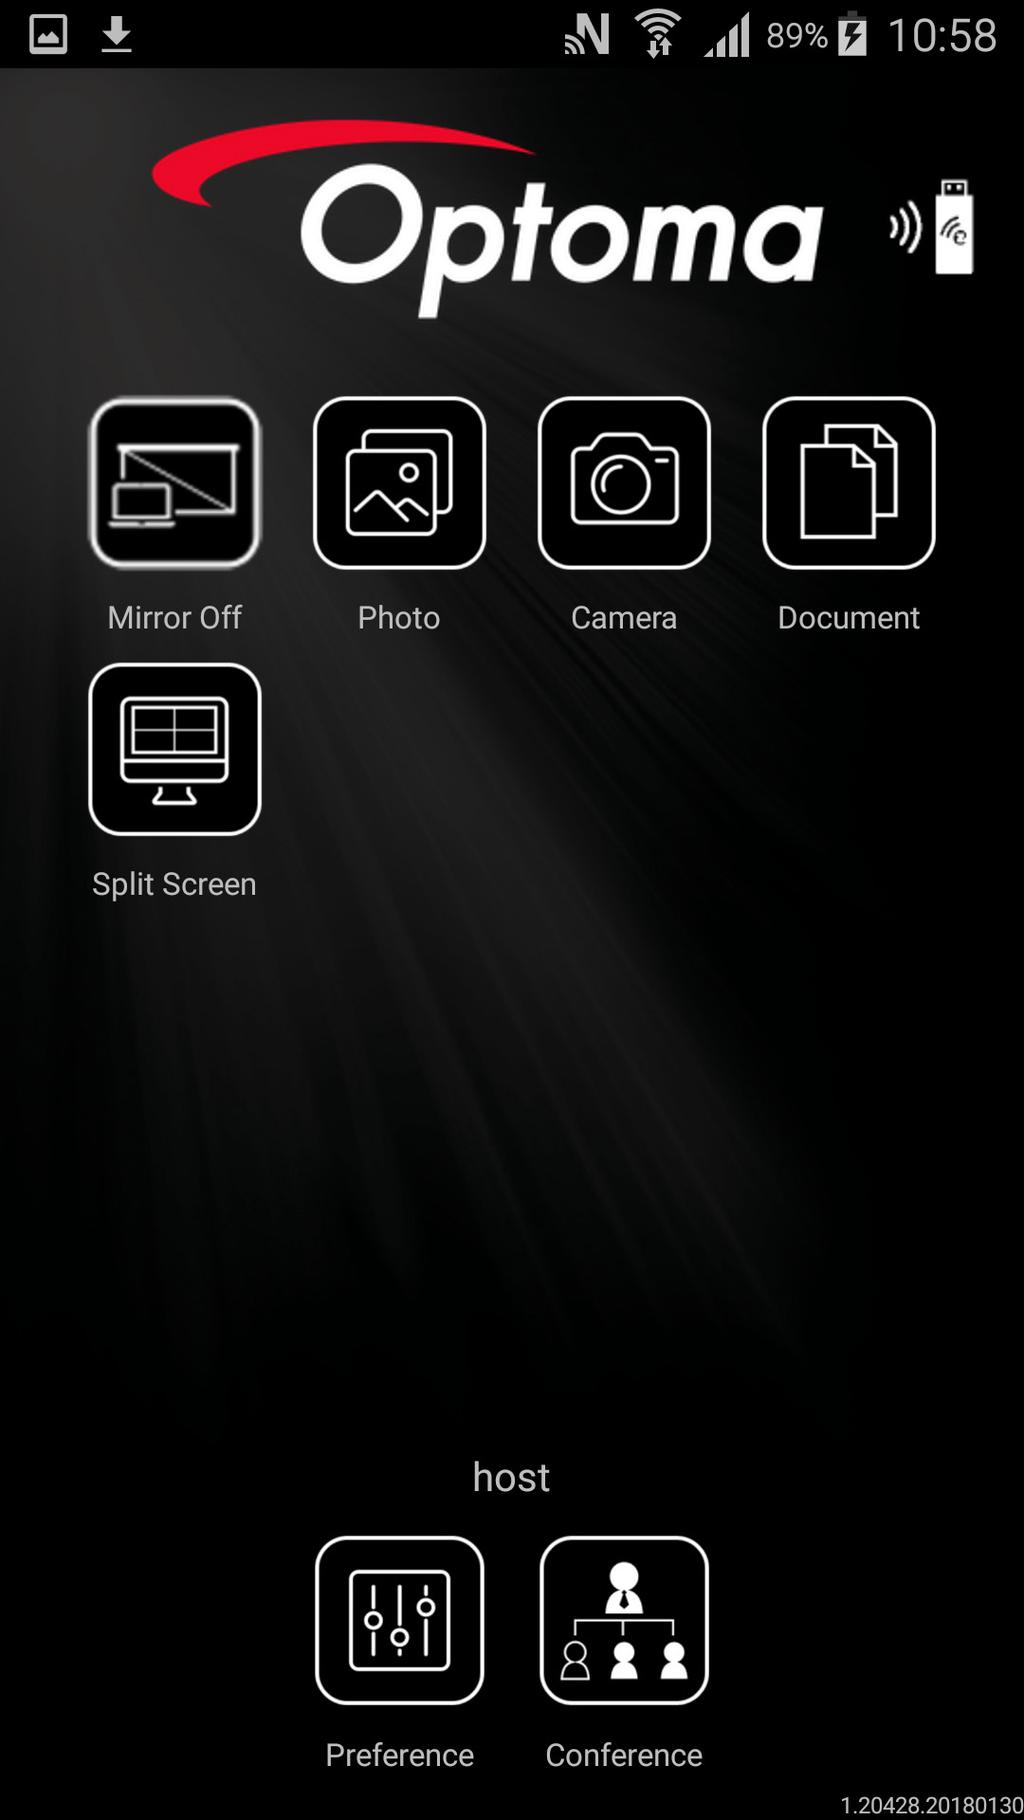 d) Open de app HDCast Pro op uw smart-apparaat en tik op het pictogram HDCast Pro. Het scherm van uw smart-apparaat wordt naar de projector gespiegeld.